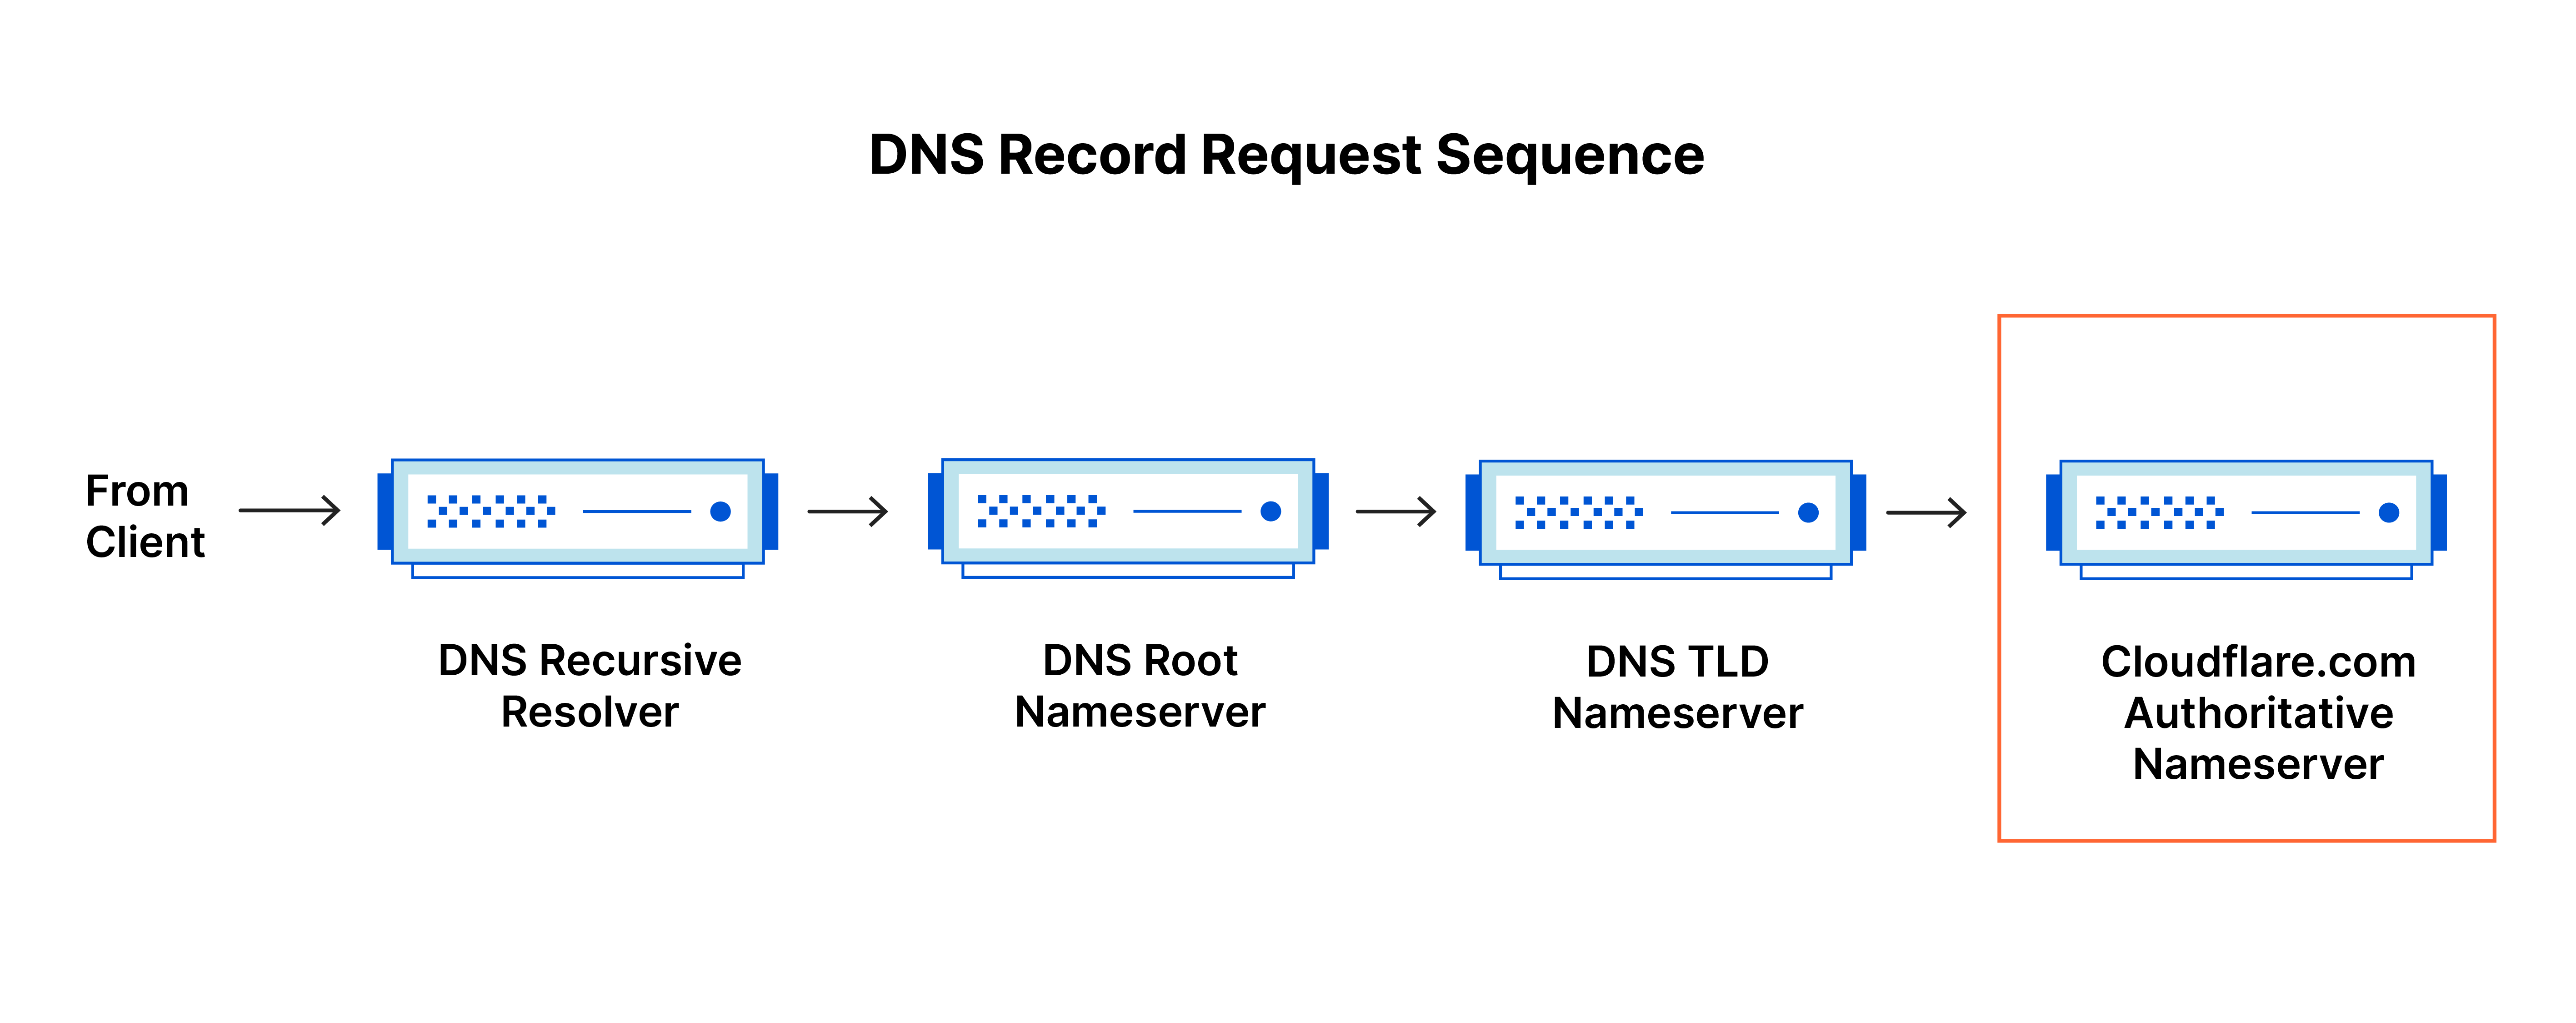 Sequência de solicitação de registro de DNS – A consulta de DNS chega a um nameserver autoritativo para cloudflare.com